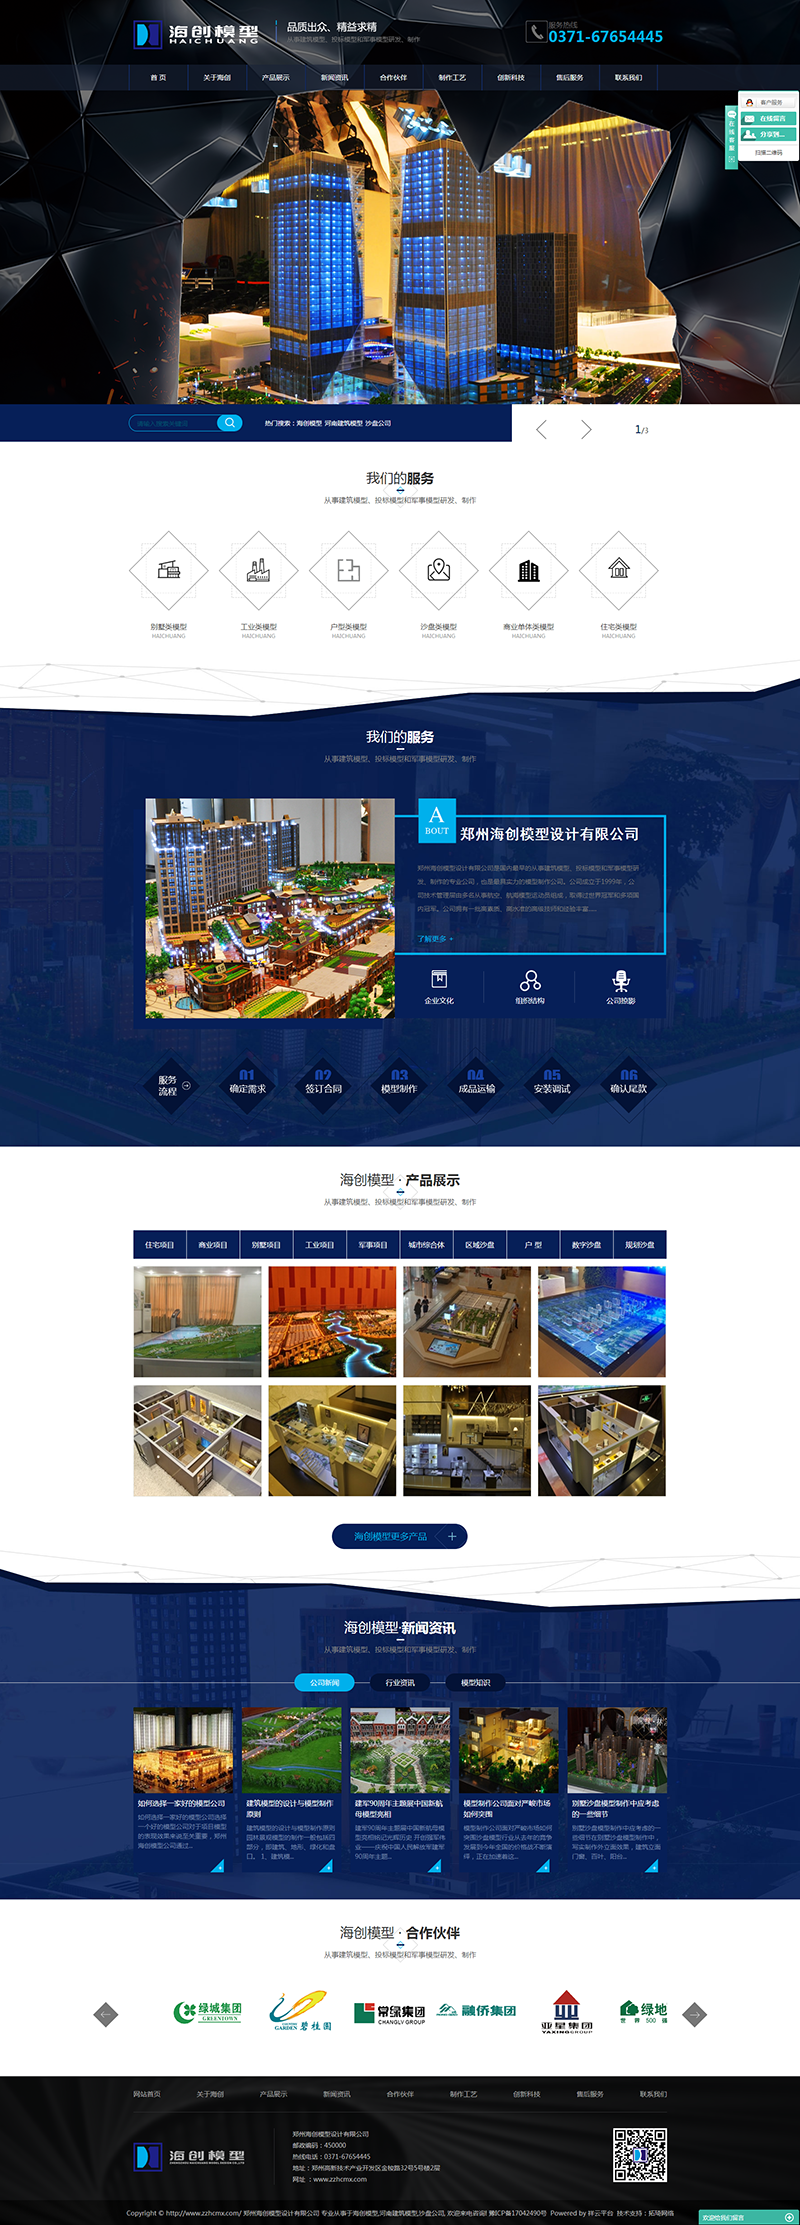 海创模型_河南建筑模型-沙盘公司-郑州海创模型设计有限公司.png